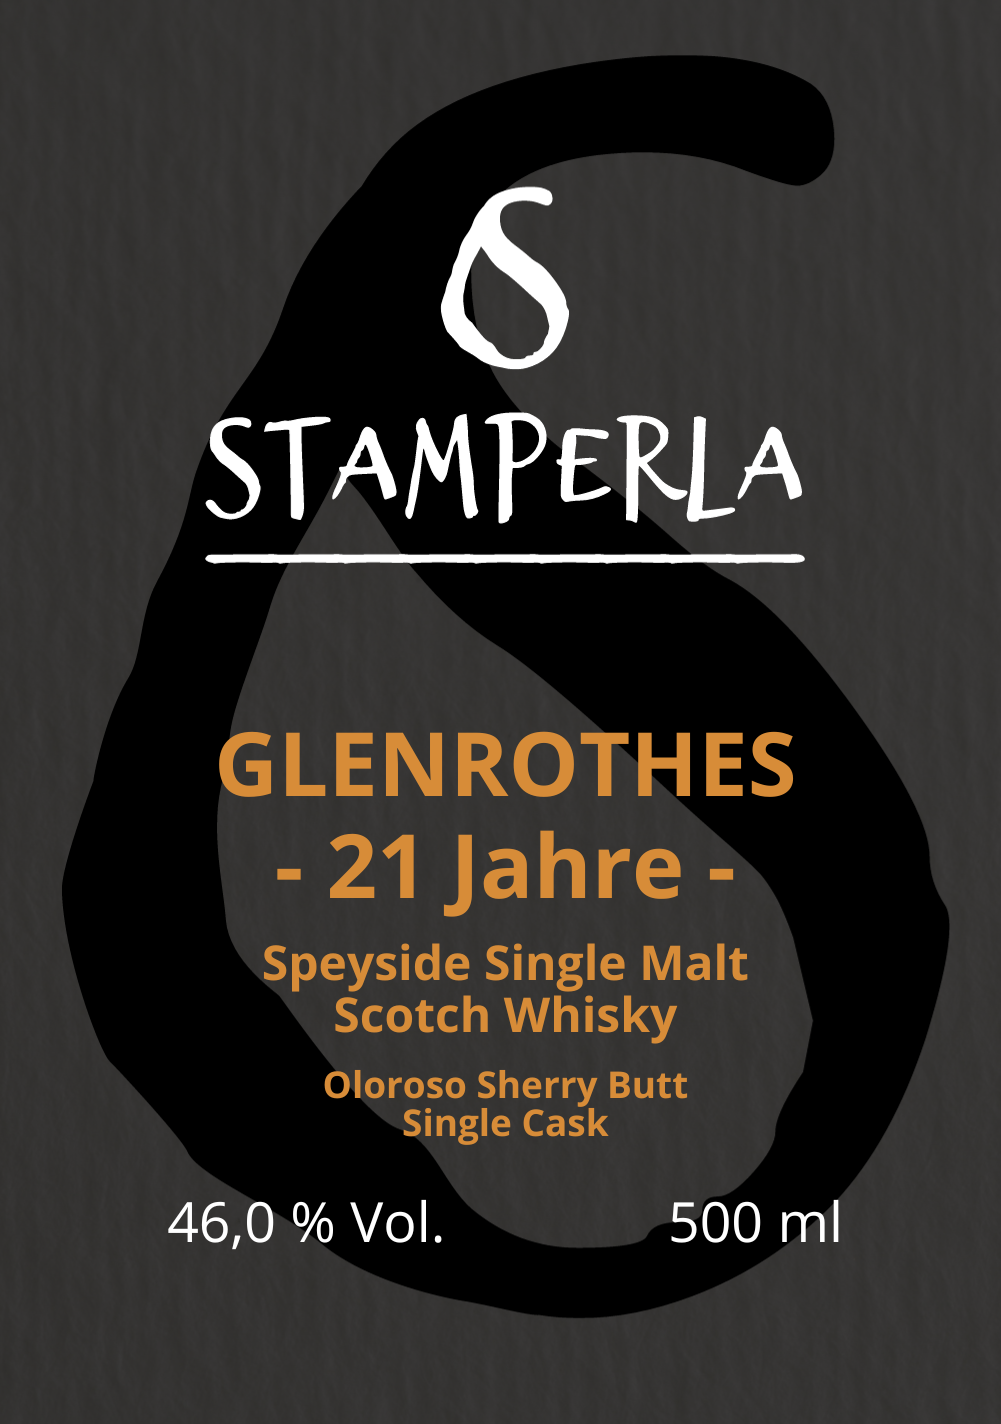 21 Jahre Glenrothes Speyside Single Malt Single Cask Scotch Whisky